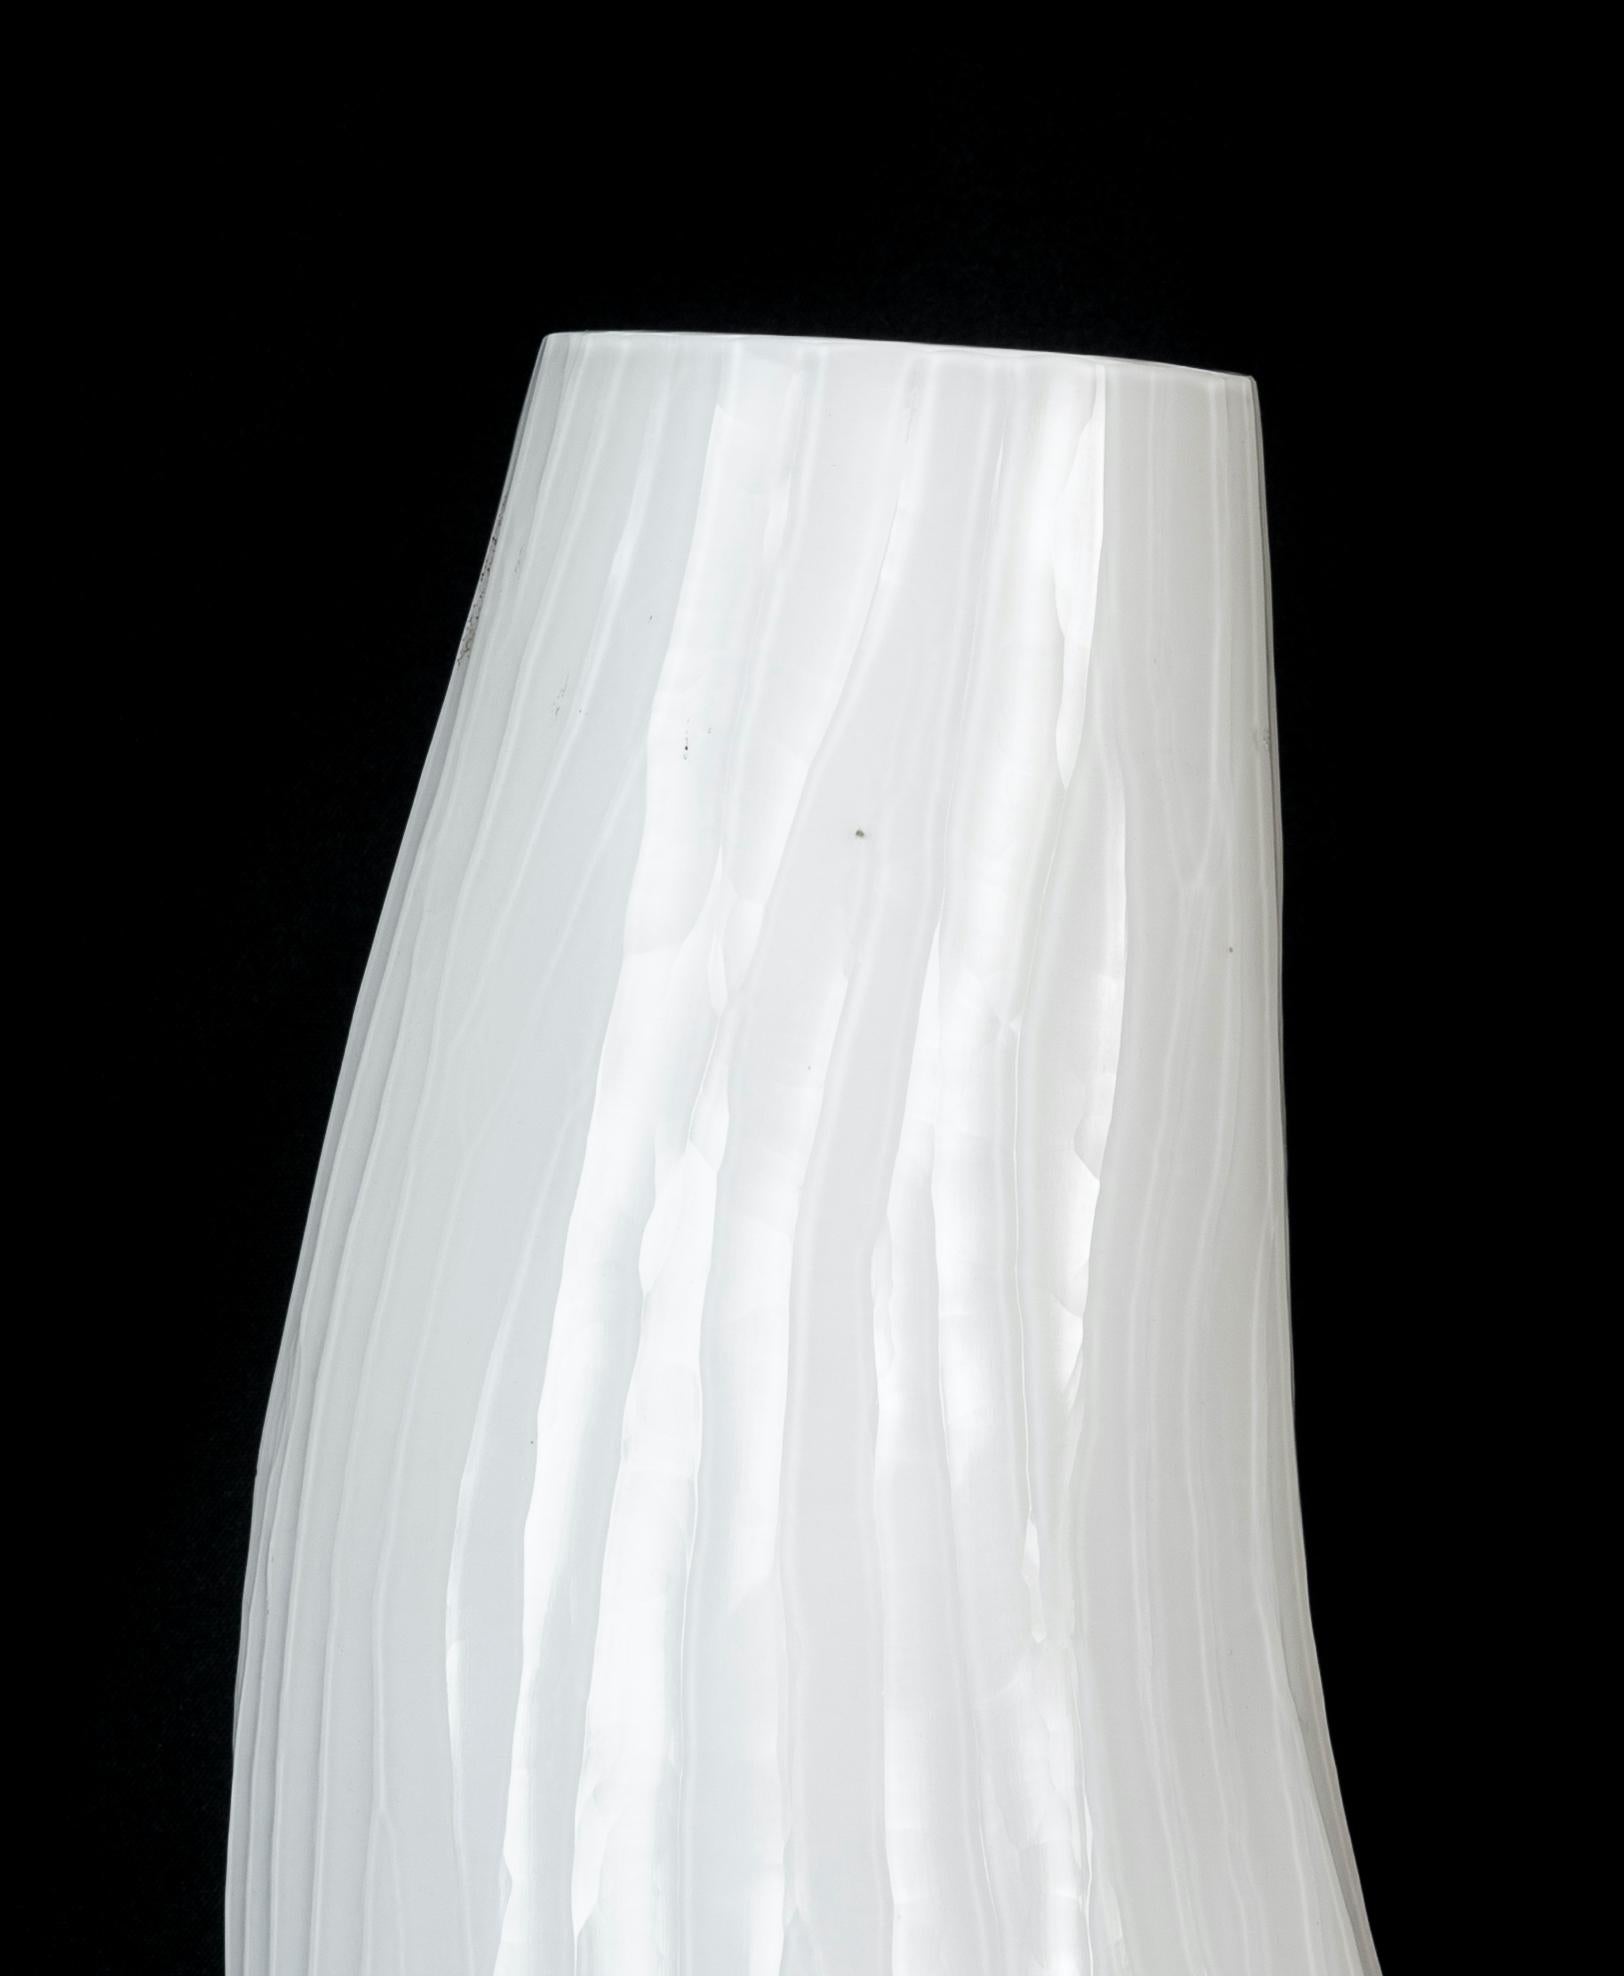 Le vase en verre blanc est un merveilleux objet décoratif en verre, réalisé dans les années 1970. 

Très beau vase en verre de forme sinueuse. Le vase a un traitement particulier du verre qui 
ce qui le rend unique !

Cet objet est parfait pour